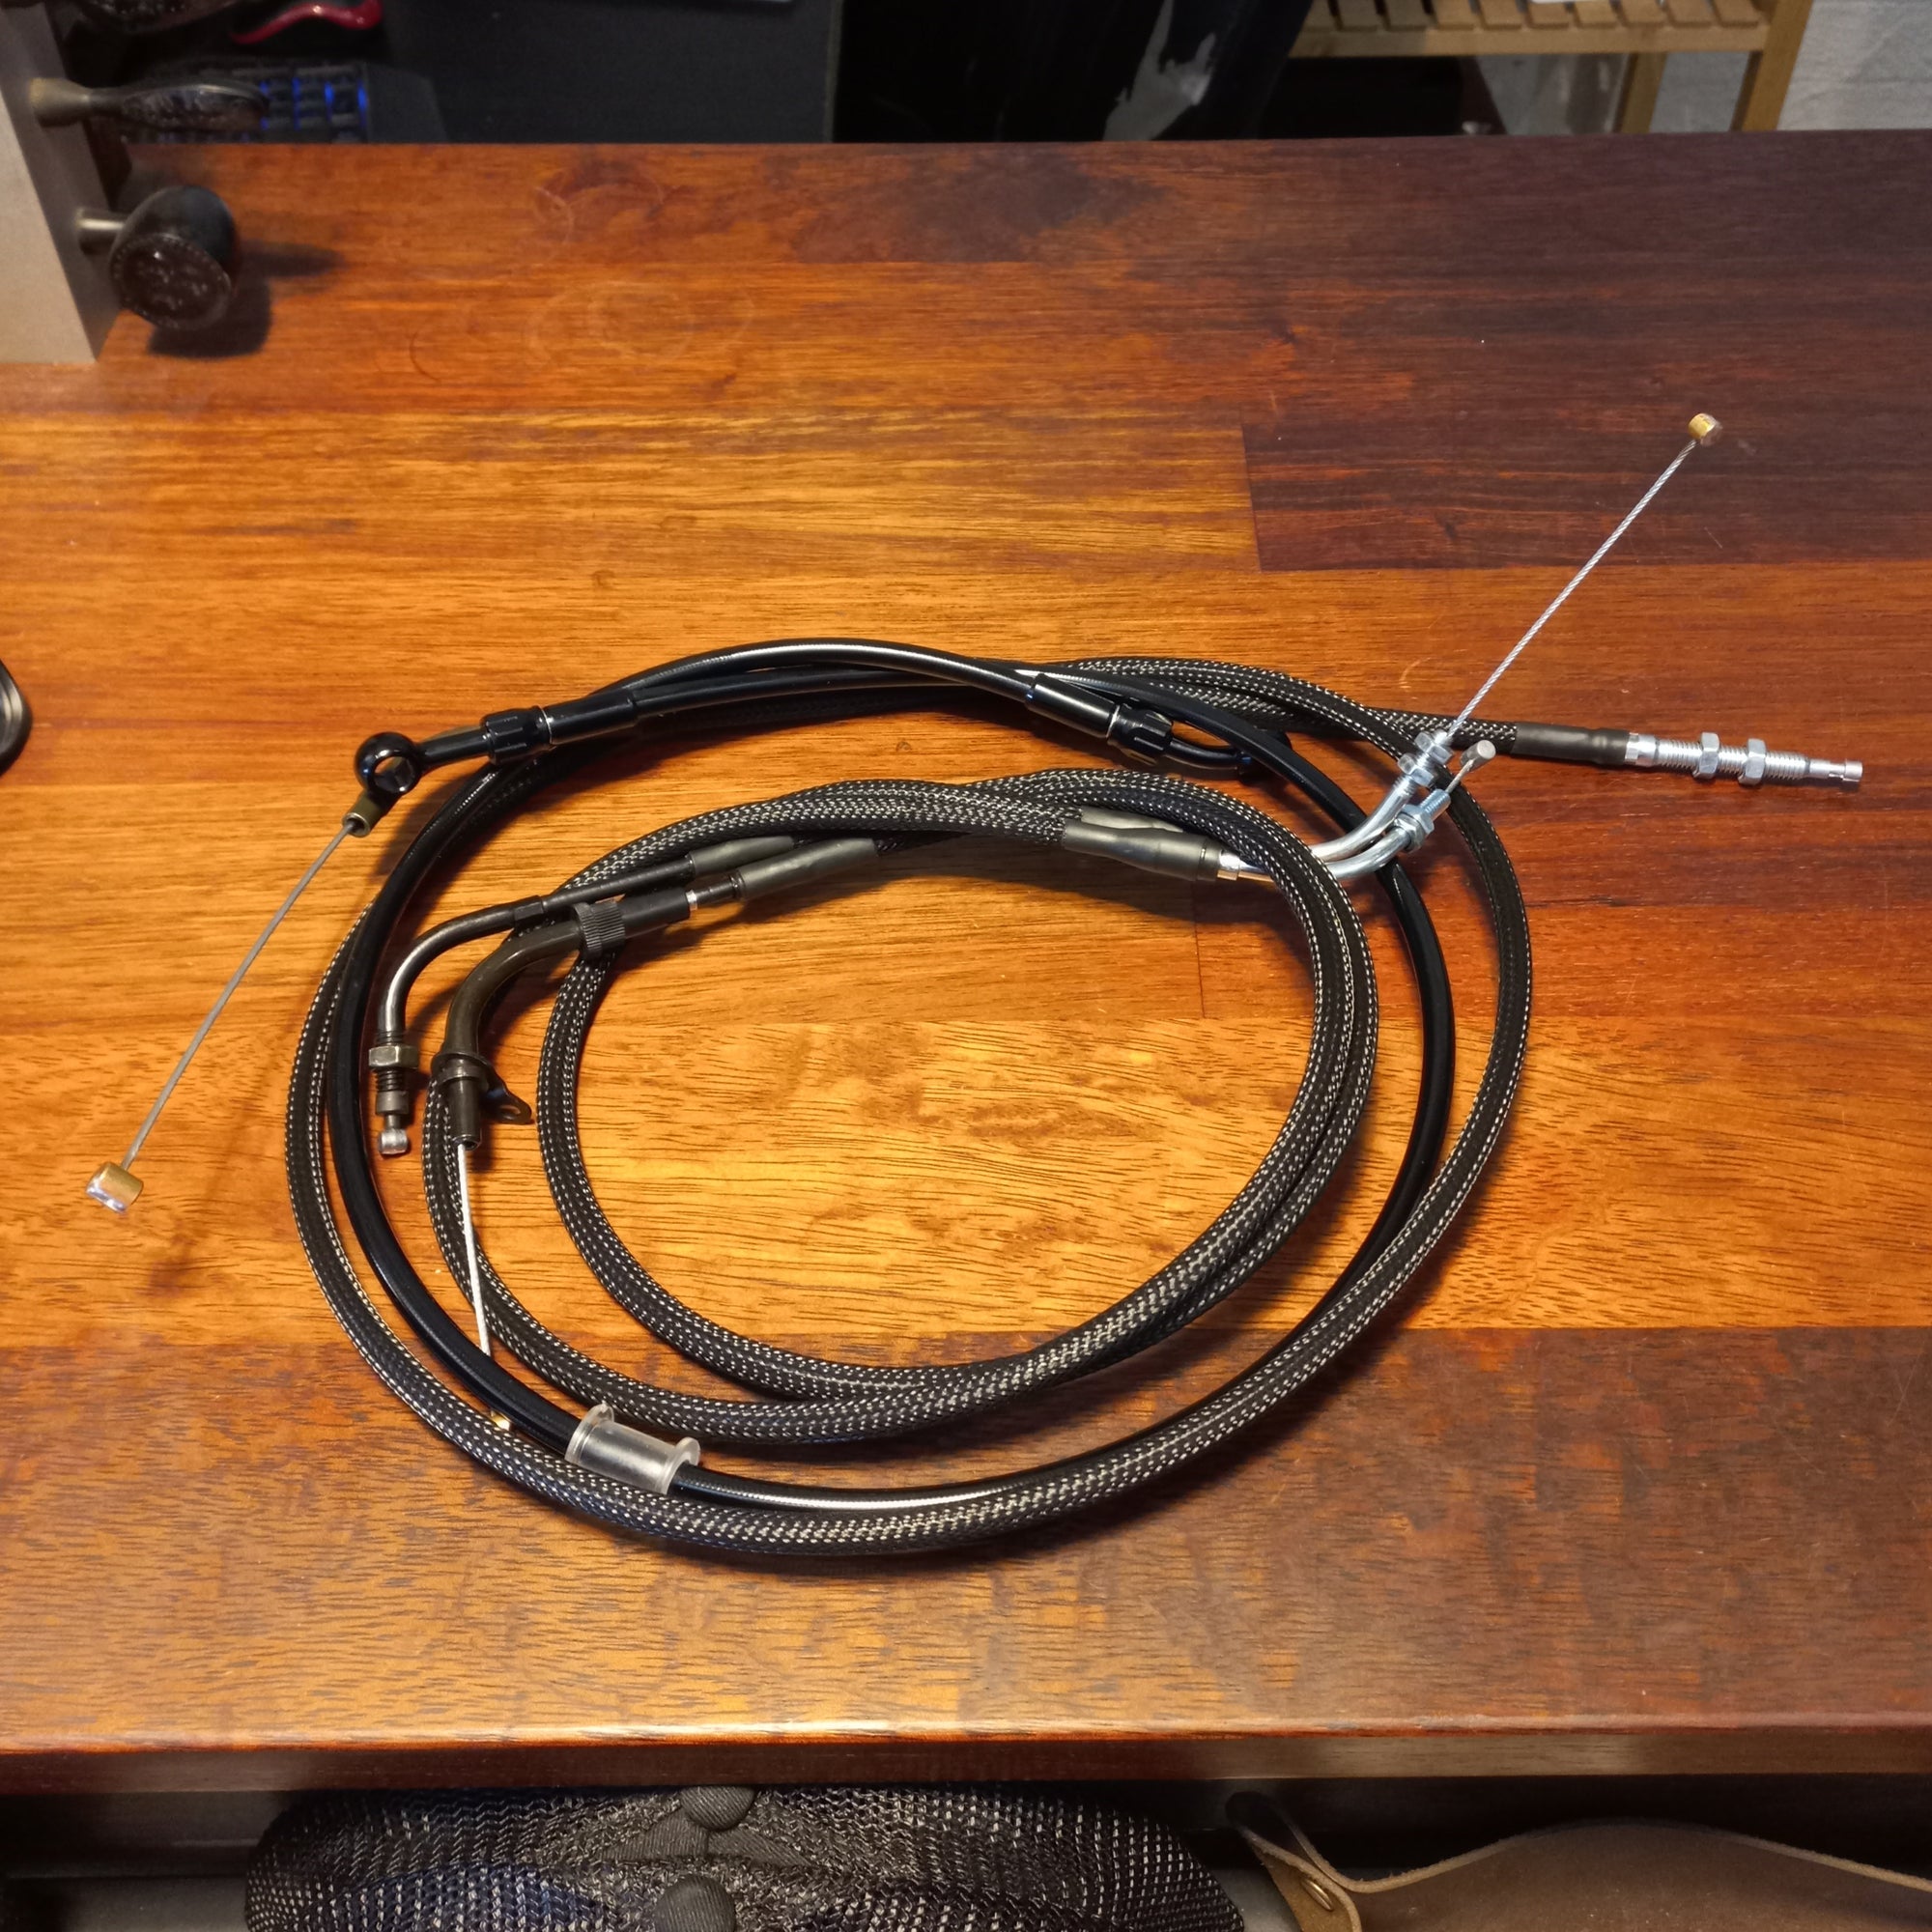 XVS throttle cables